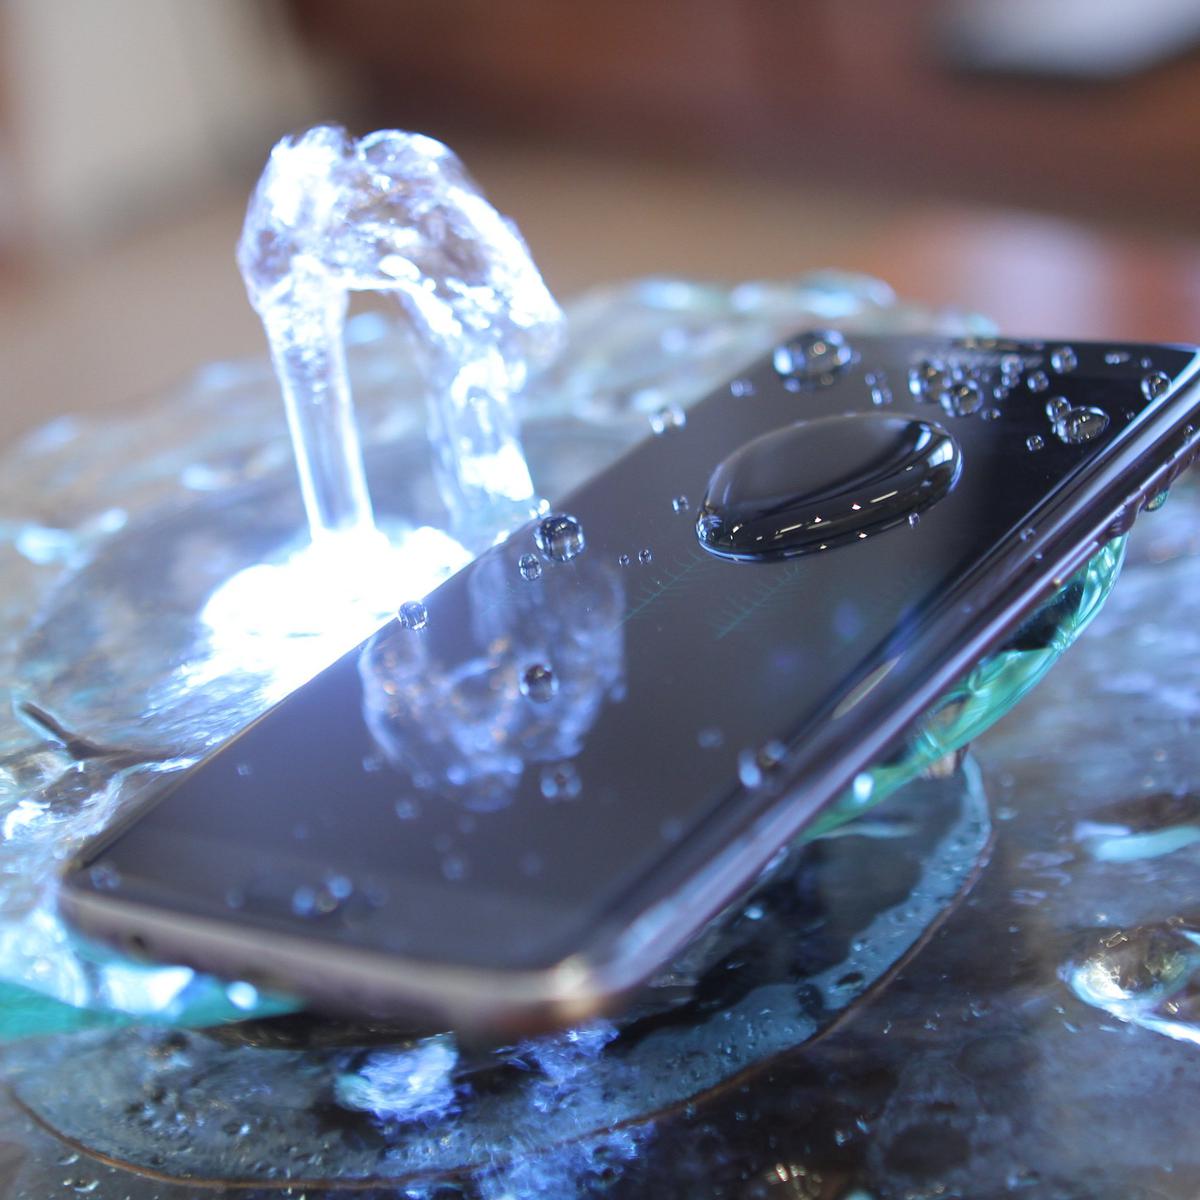 Tu teléfono móvil es resistente al agua? Qué hacer (y qué no hacer) si tu  teléfono Android se moja - Cepymenews